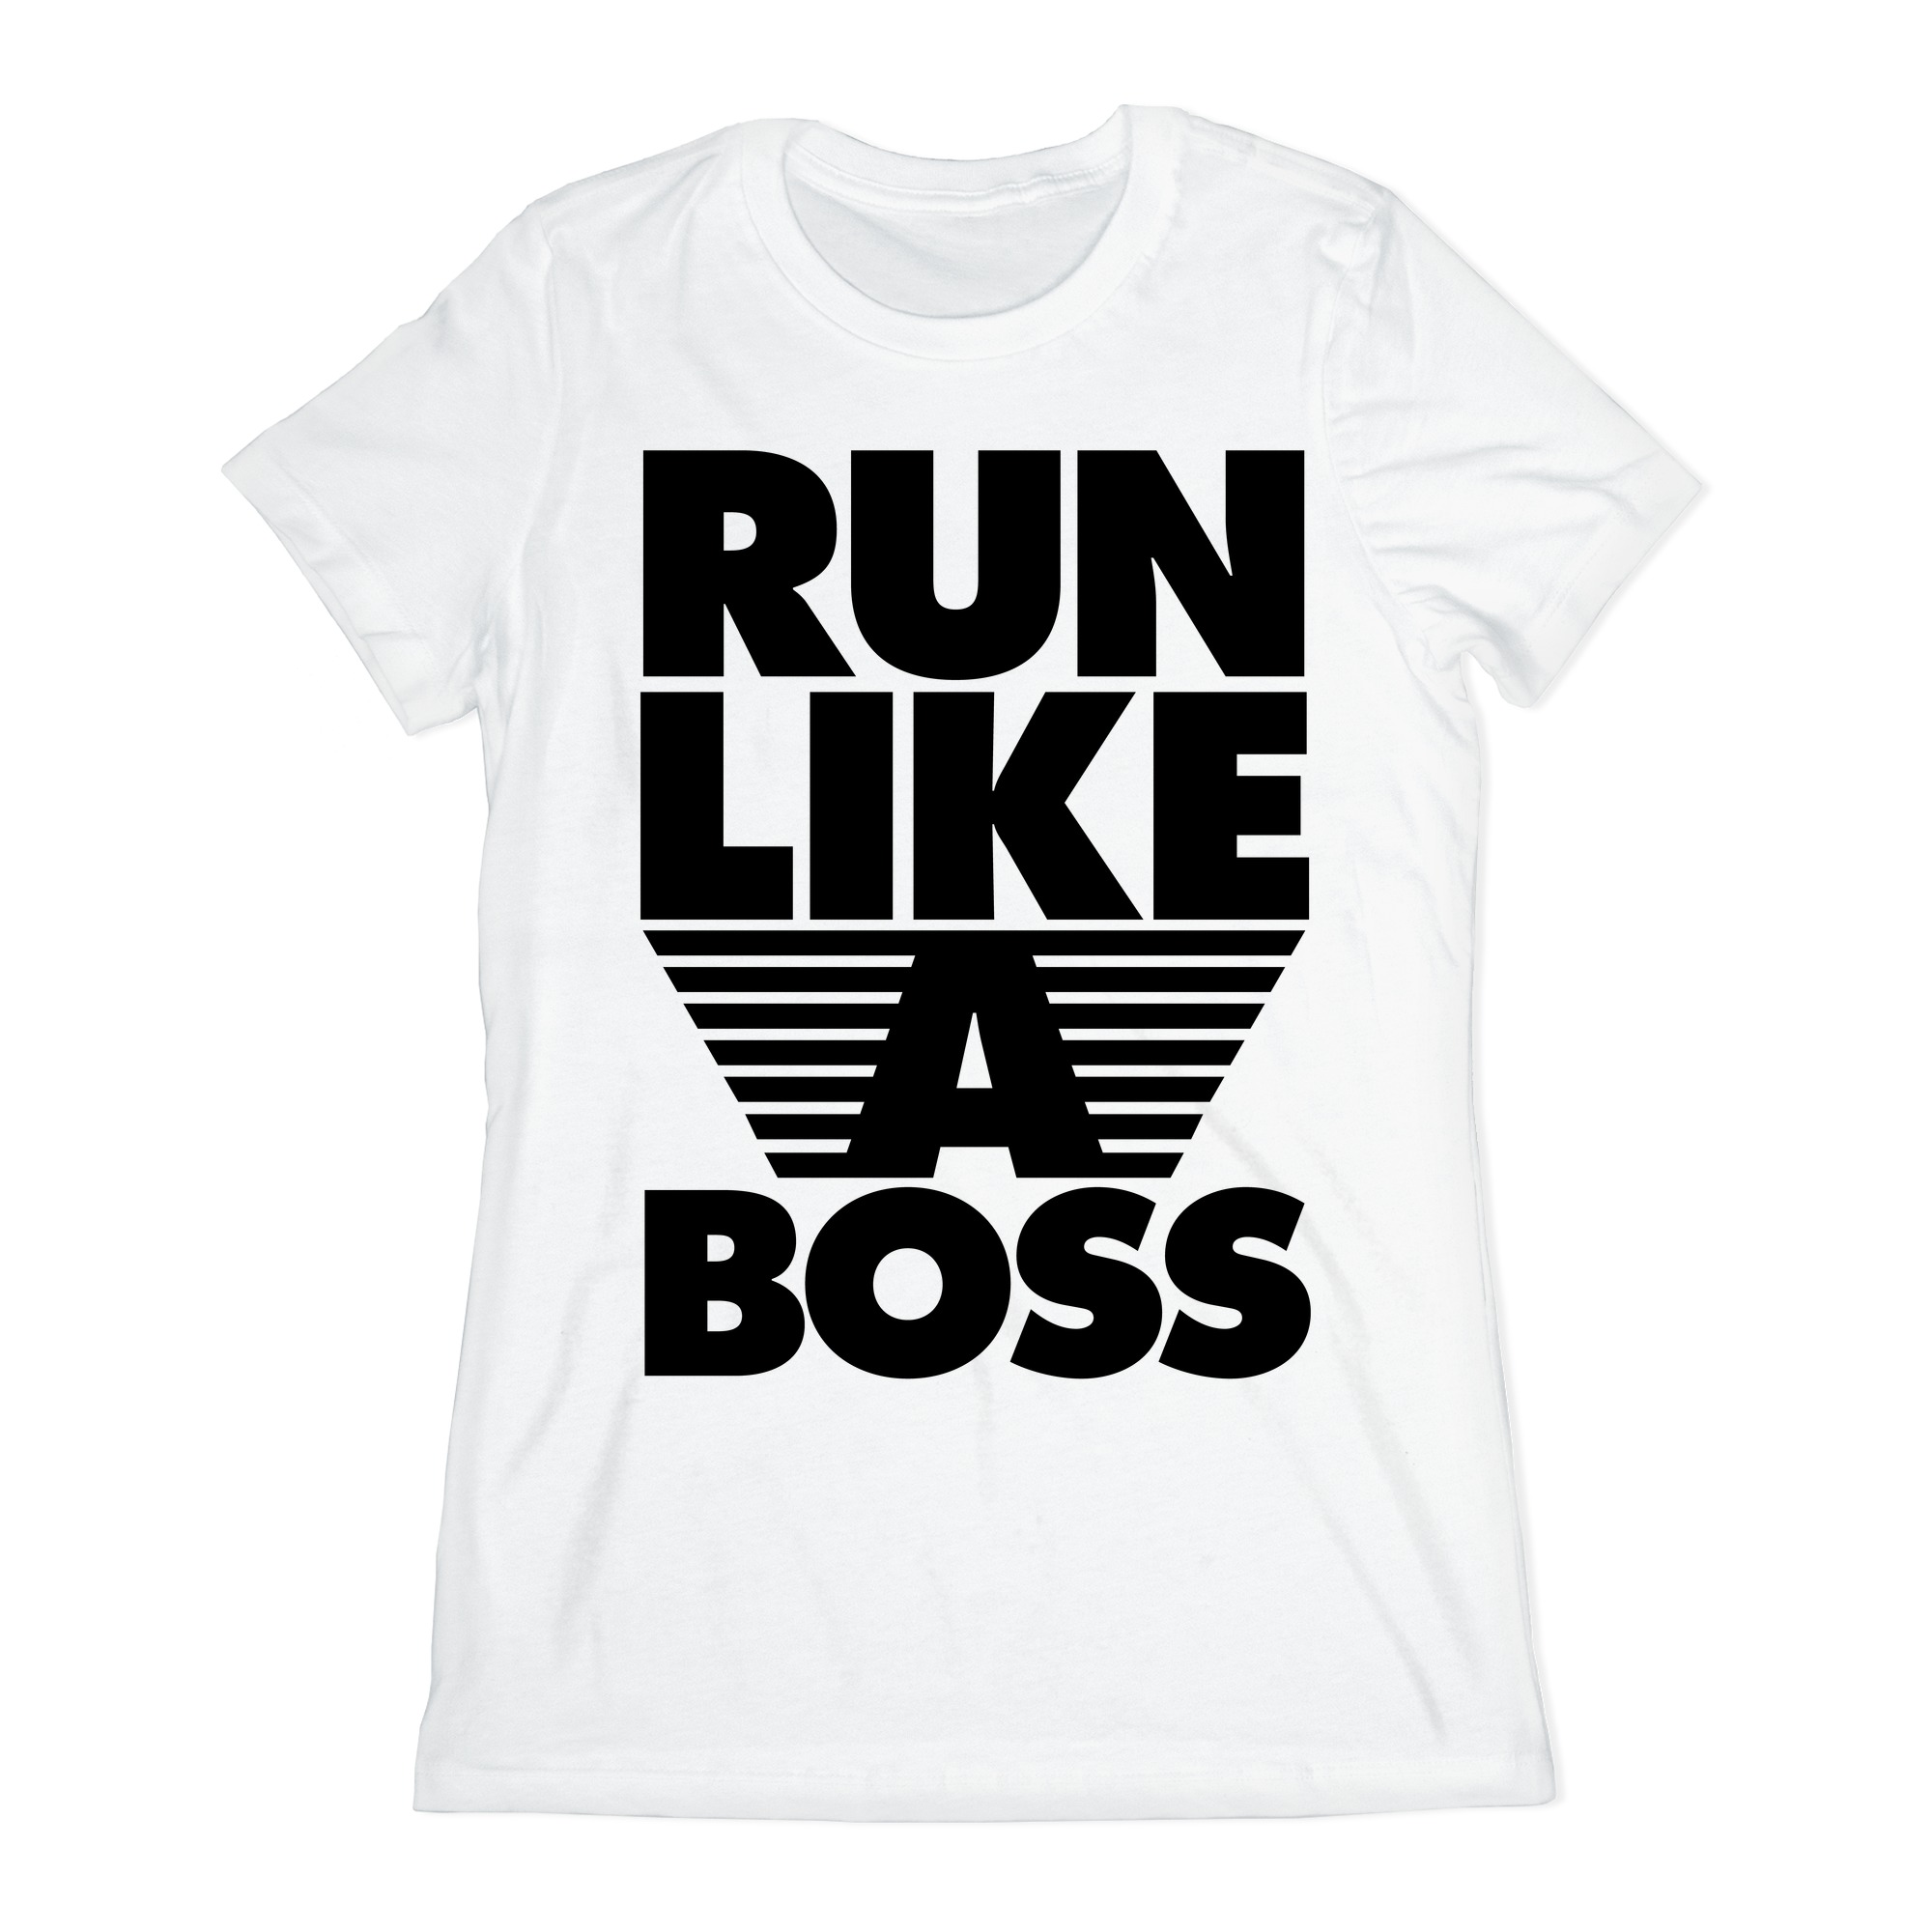 like a boss t shirt